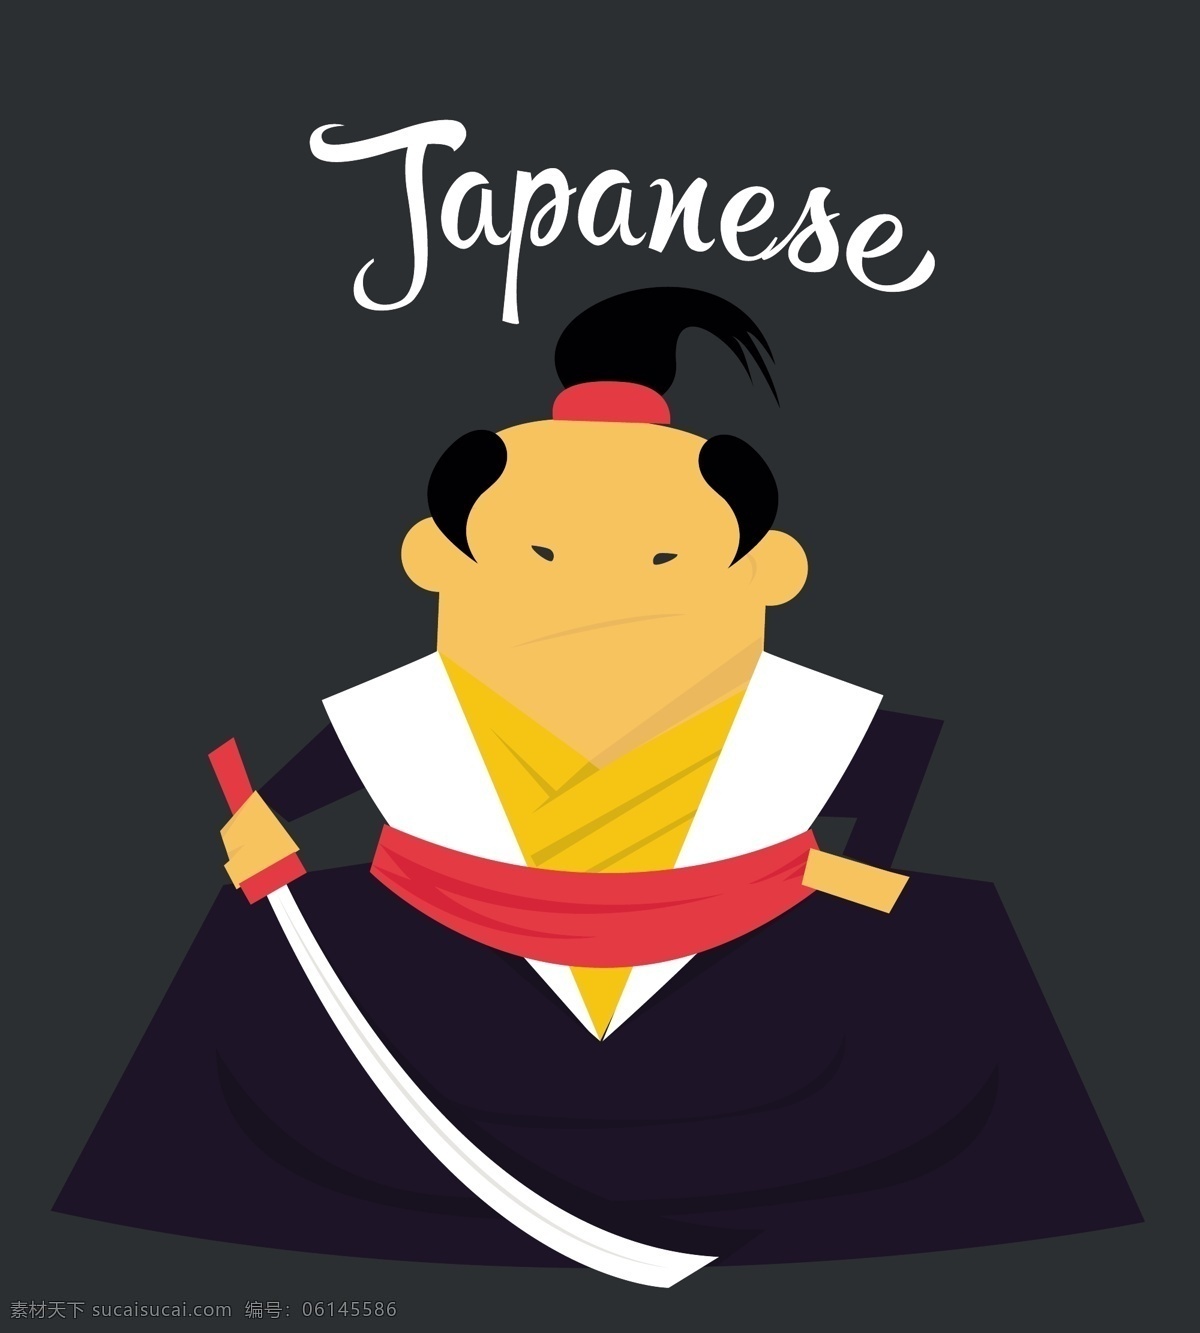 日本 武士 平 插图 漫画 社会 性格 日本的人 的卡 通 人物 插画 教授 亚洲的特点 亚洲 传统的武士 武士刀 黑色